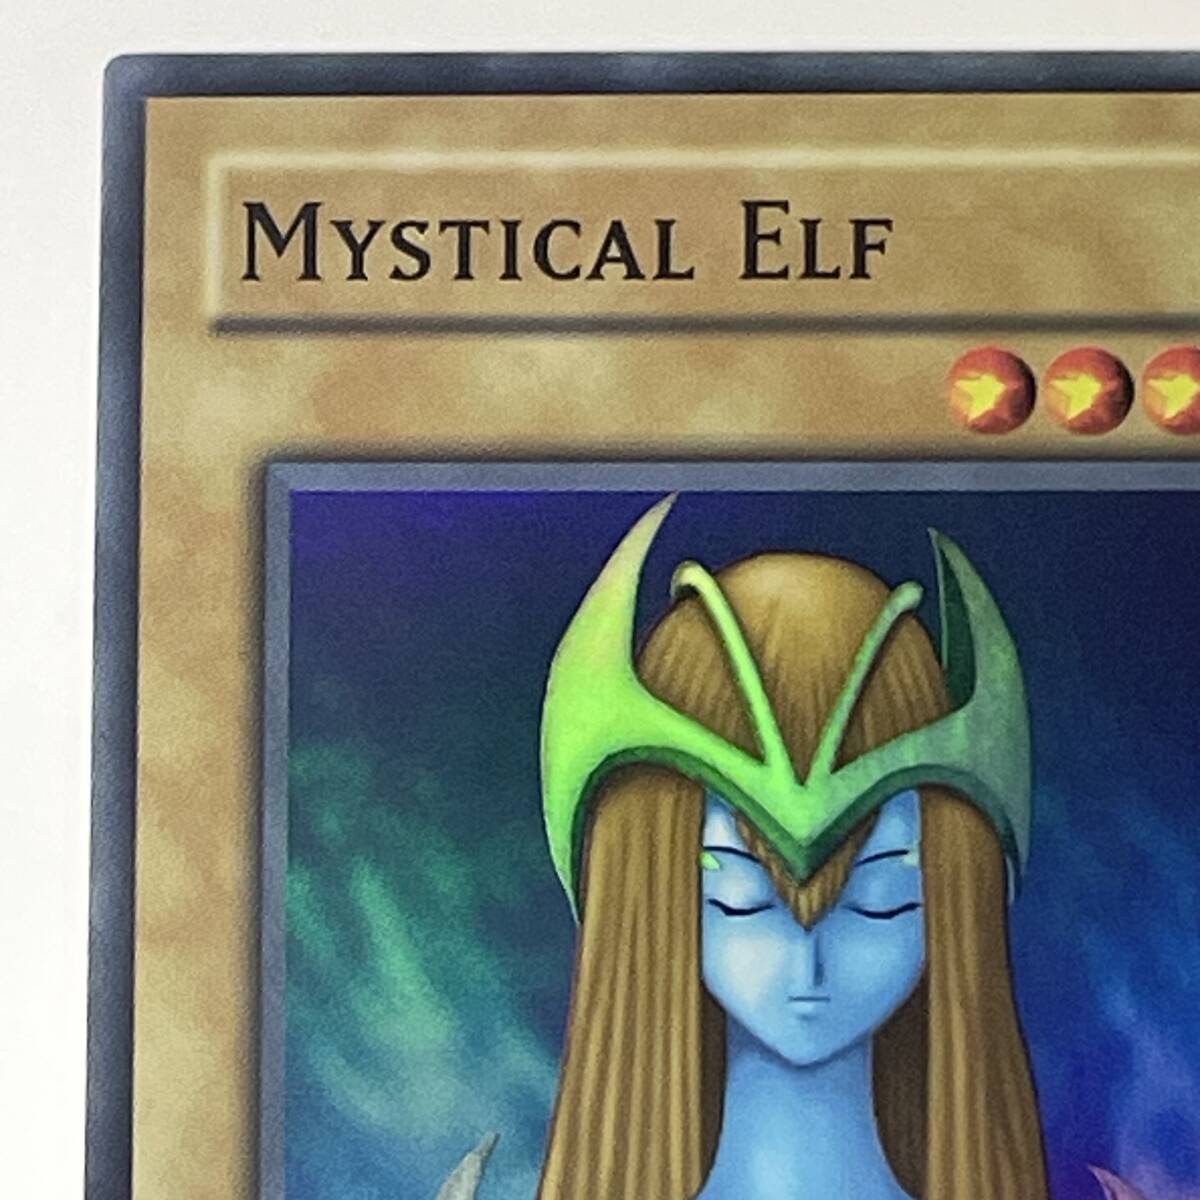 #9770 遊戯王 MYSTICAL ELF ホーリー・エルフ LOB-062 SR Mystical Elf レアカード 現状品の画像2